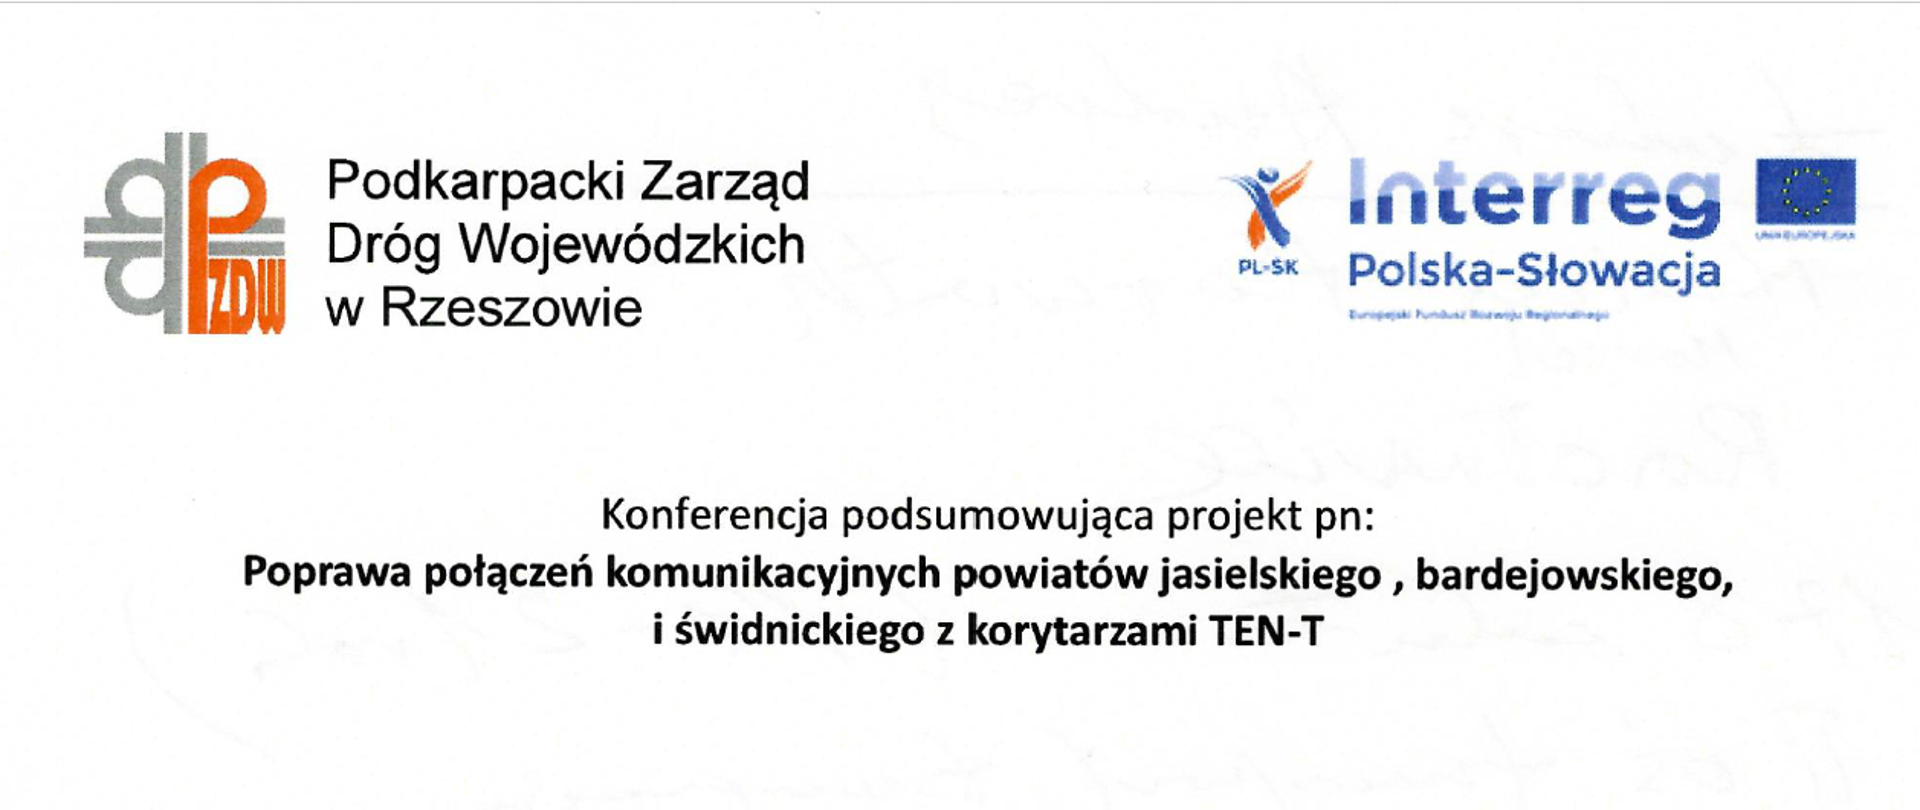 Konferencja podsumowująca projekt pn.: Poprawa połączeń komunikacyjnych powiatów jasielskiego, bardejowskiego i świdnickiego z korytarzami TEN-T